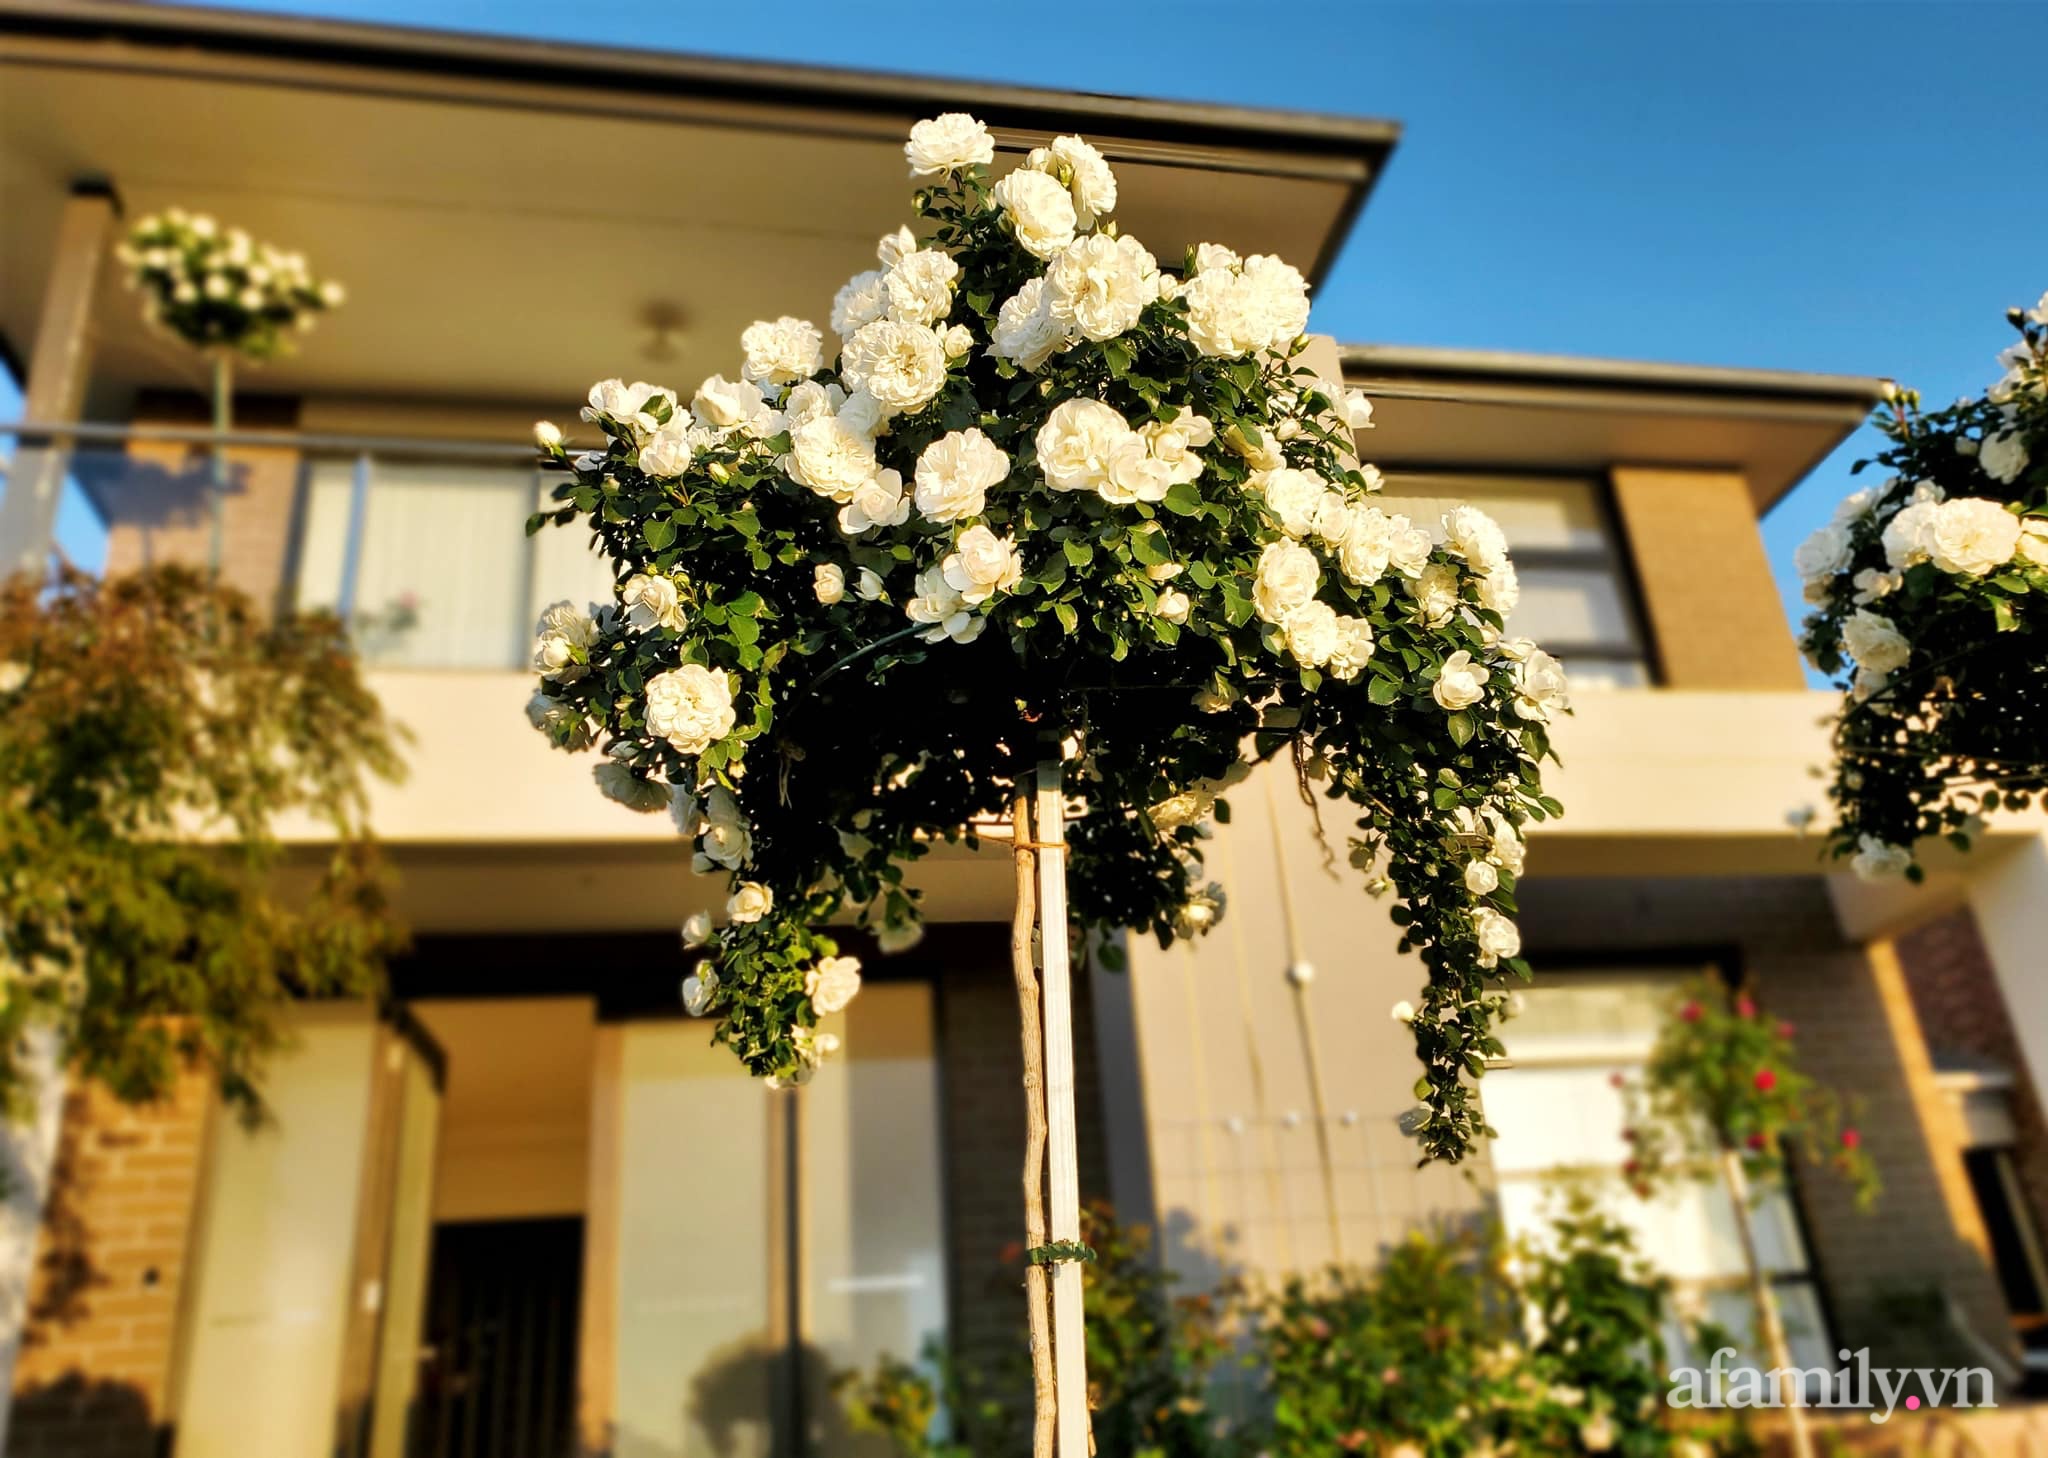 Vườn hồng 250m² ngát hương rực rỡ sắc màu đẹp như cổ tích của mẹ Việt ở Úc - Ảnh 16.